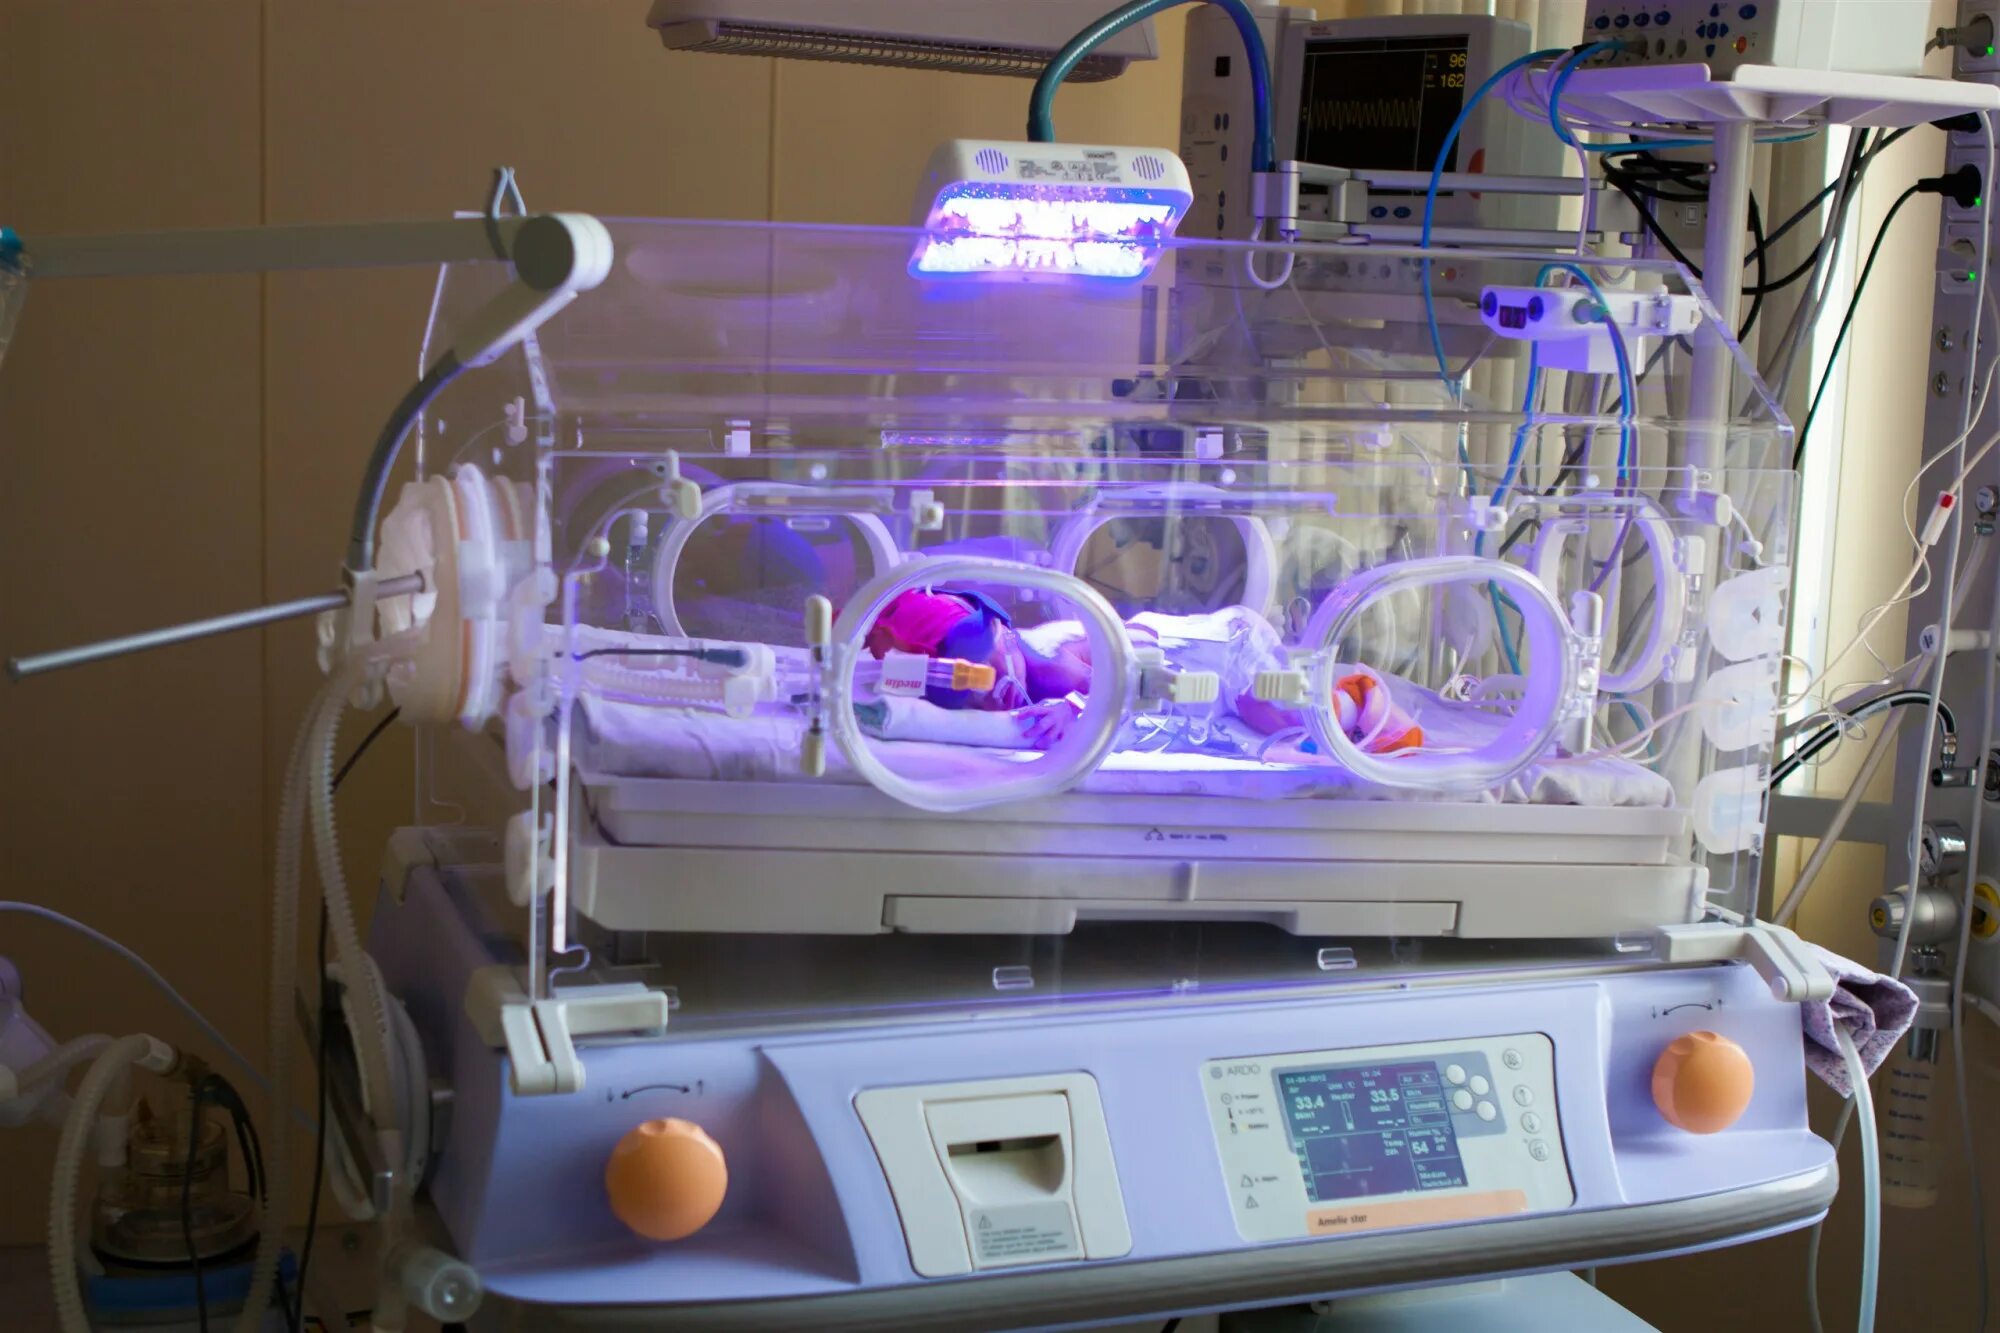 2 этап выхаживания. Инкубатор для интенсивной терапии новорожденного BABYGUARD I-1120. Кювез реанимационный для новорожденных. Кювез для новорожденных недоношенных детей. Инкубатор для новорожденных ИДН-02-«данио».